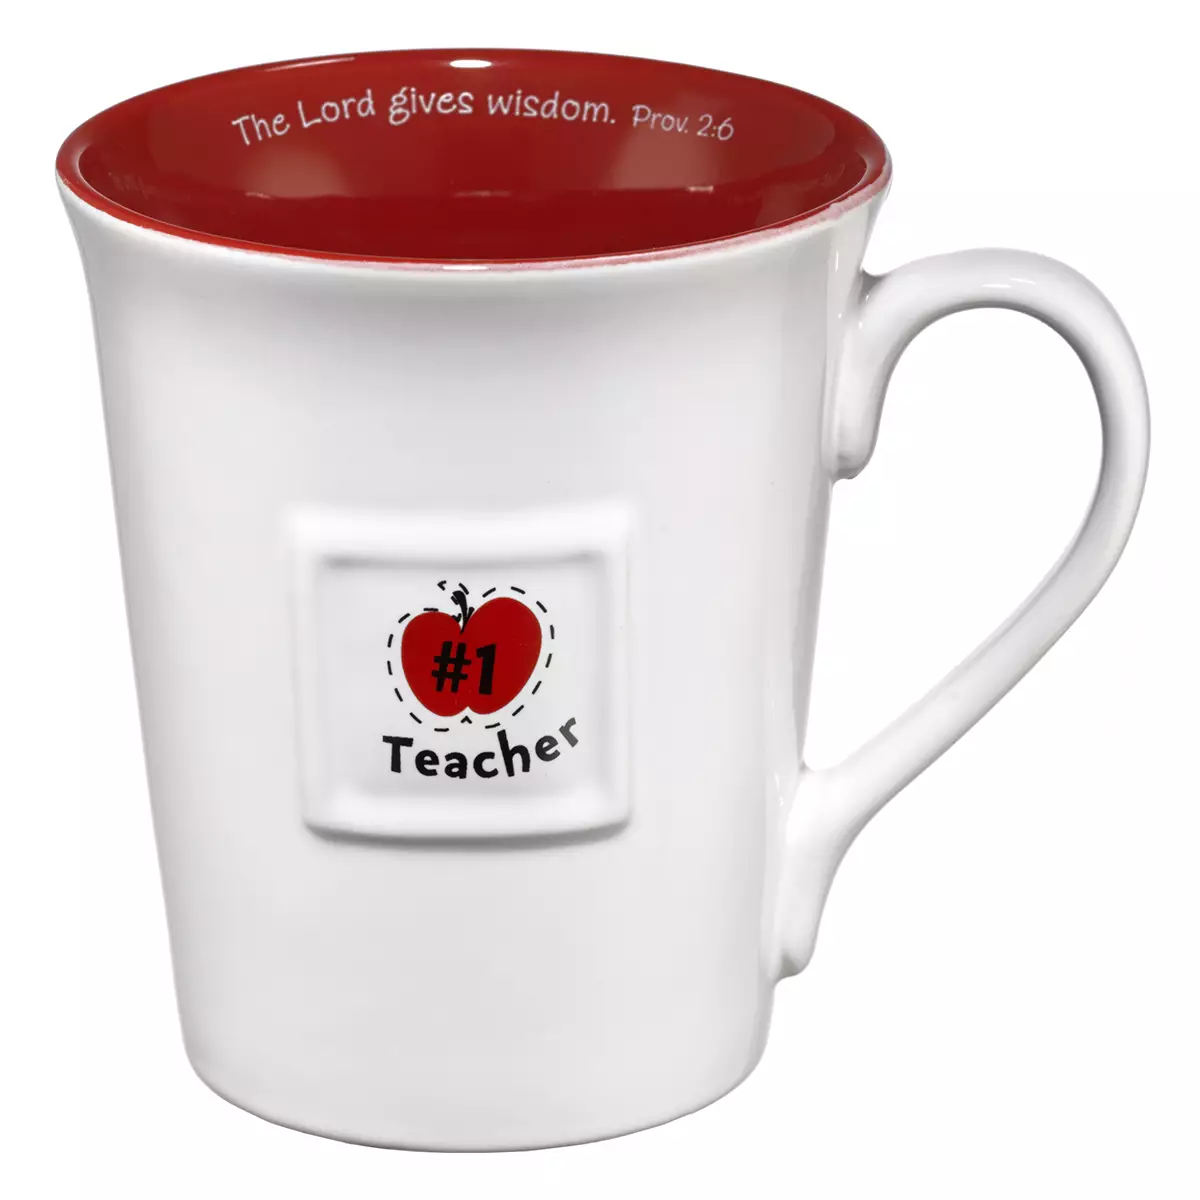 #1 Teacher/Prov. 2:6 (Red) Ceramic Mug